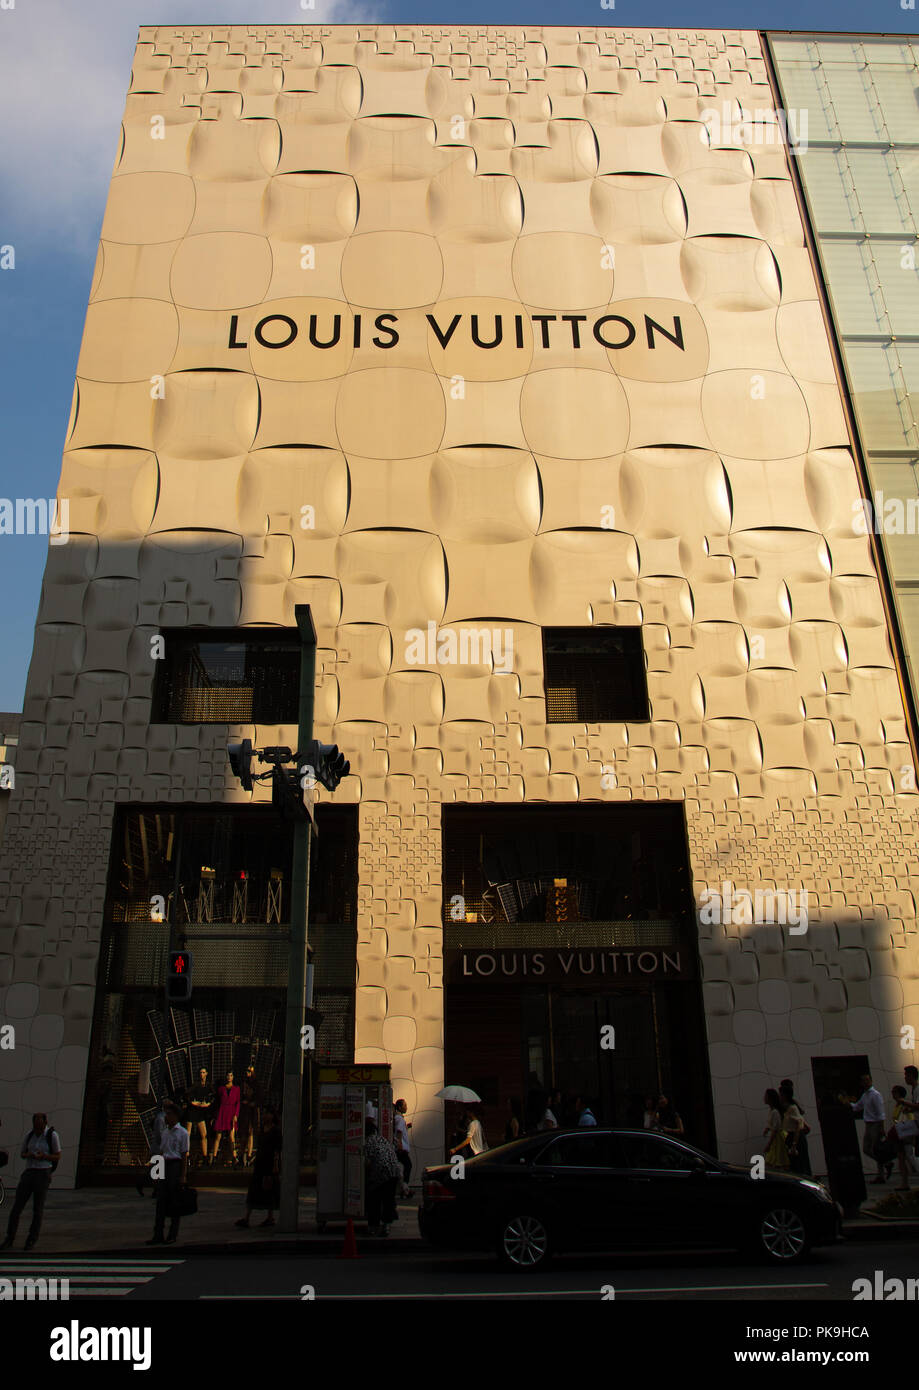 Logo De Louis Vuitton Y Letras Signo De Tienda Marca De Lujo Tienda De Moda  Imagen editorial - Imagen de edificio, editorial: 203070510